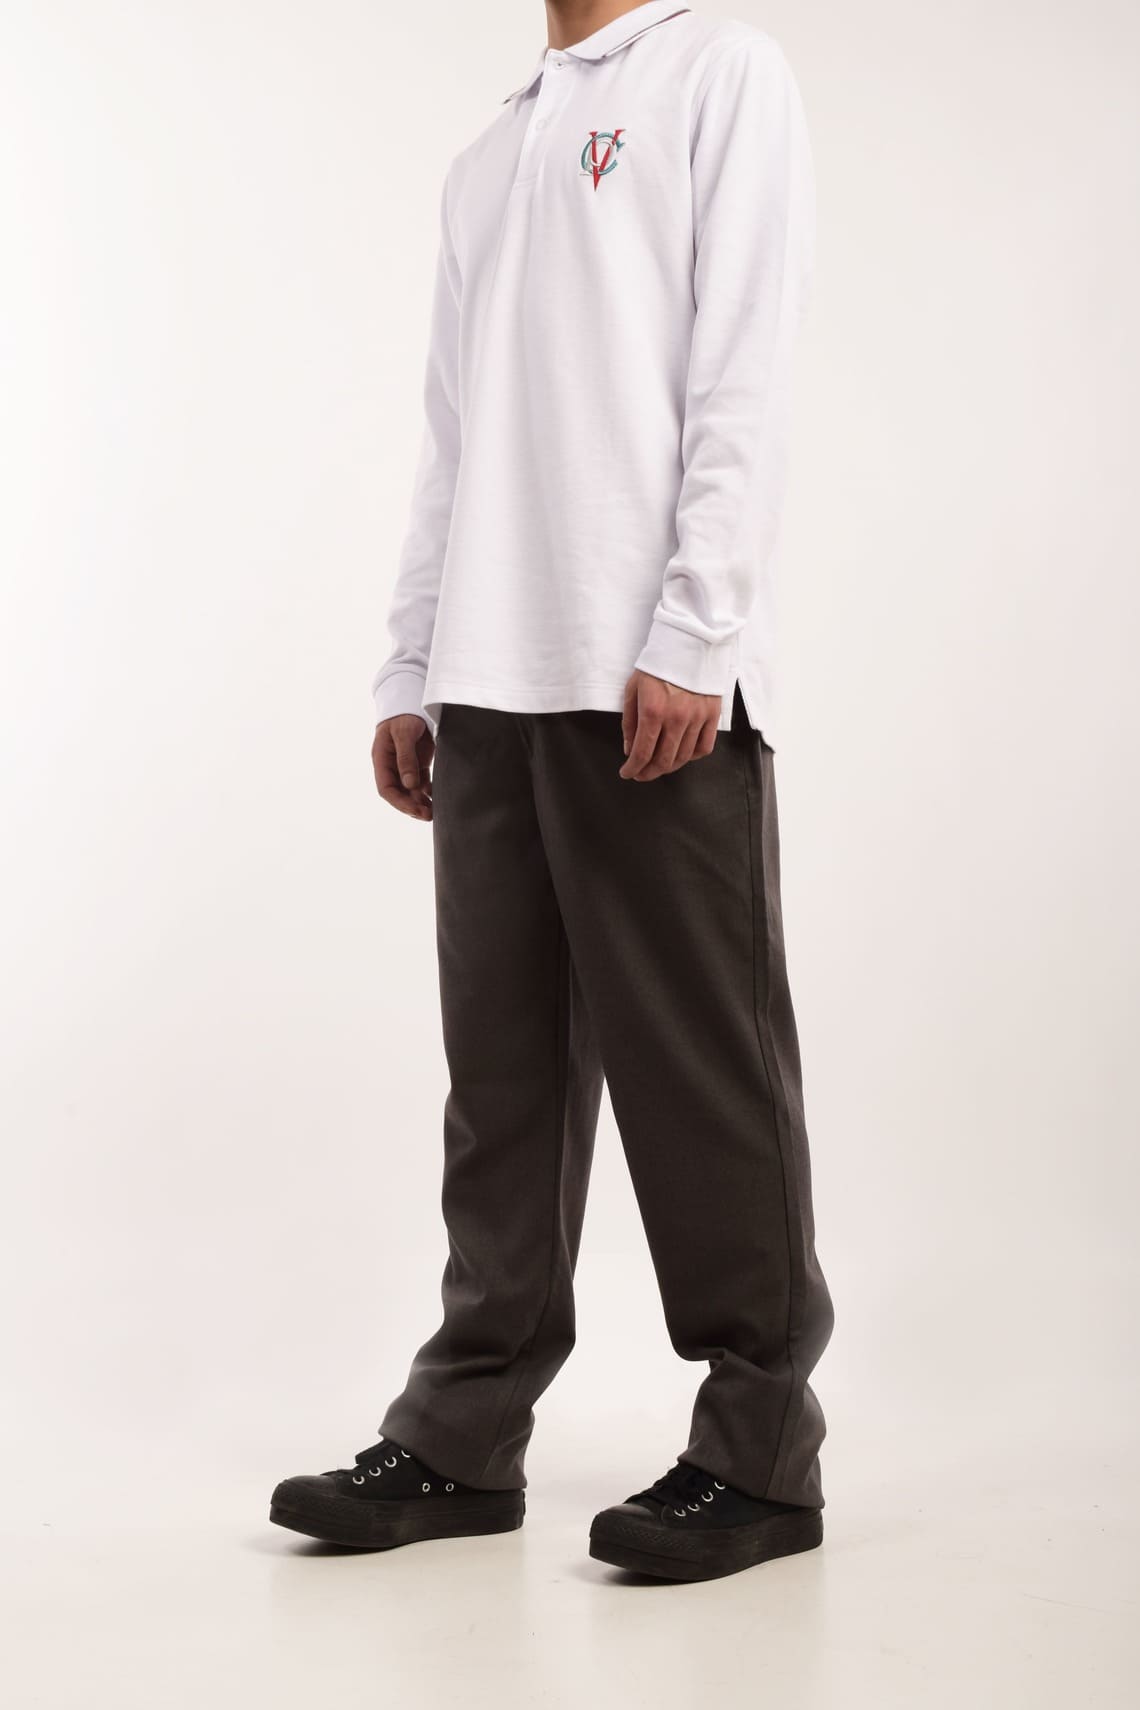 Pantalon Vestir Niño (10 - 16)